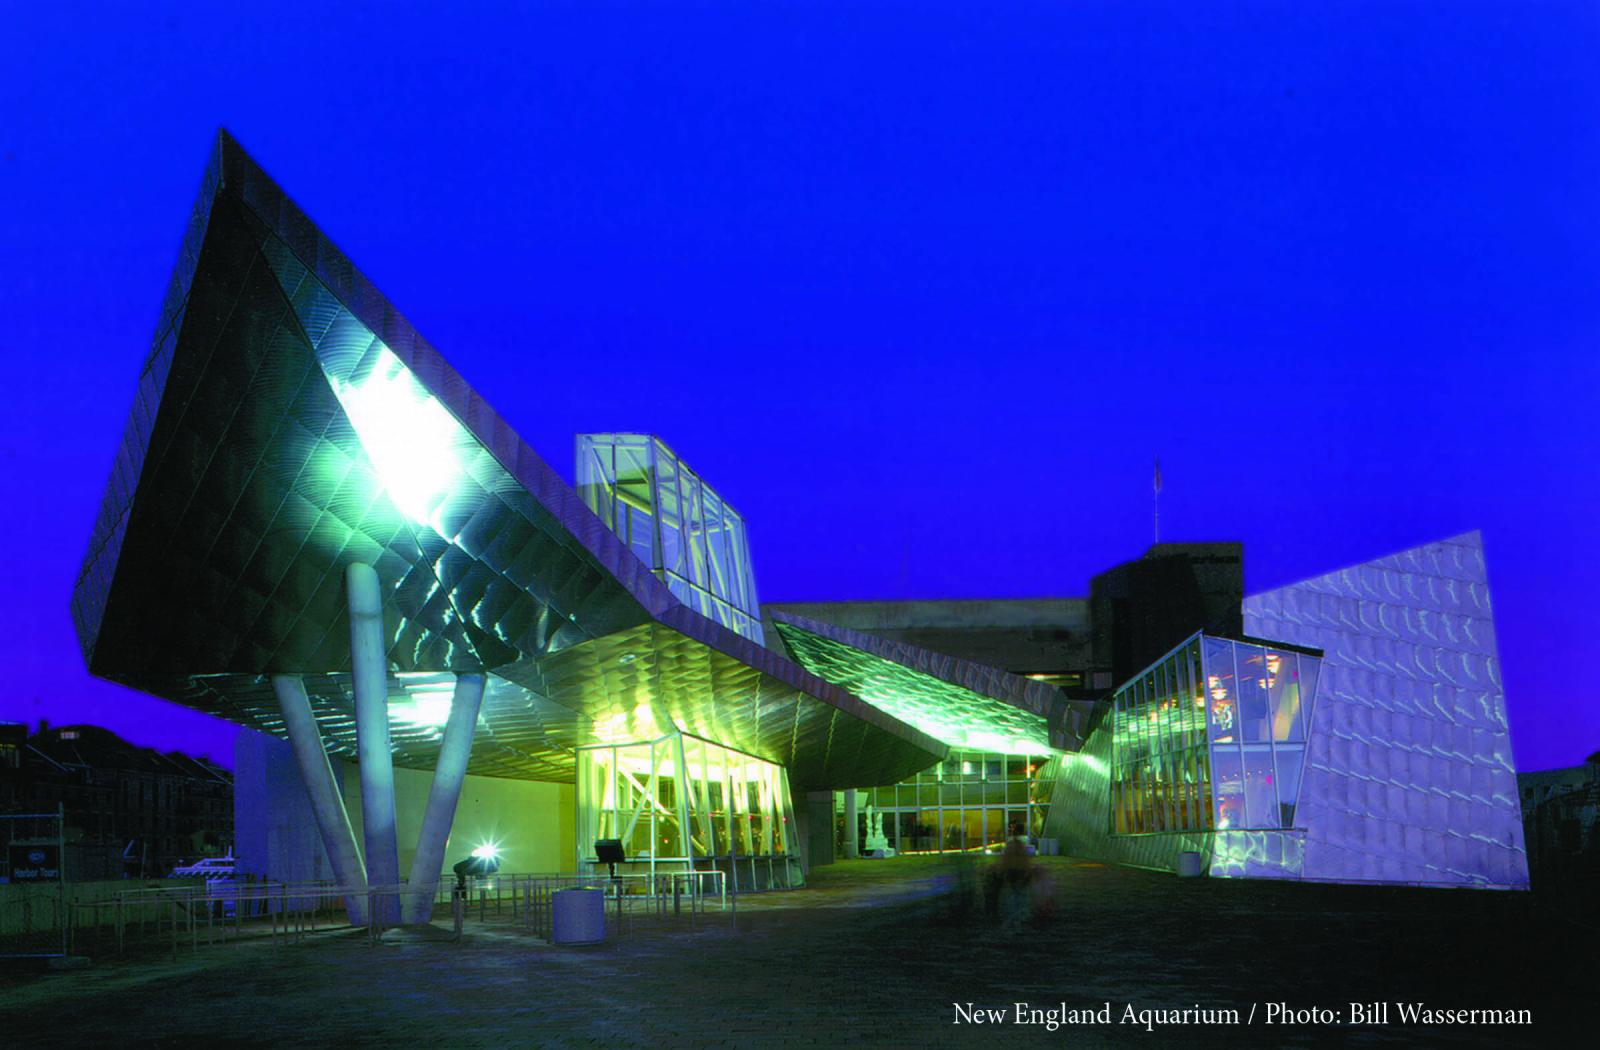 New England Aquarium Hosting Scout Film Festival 2022